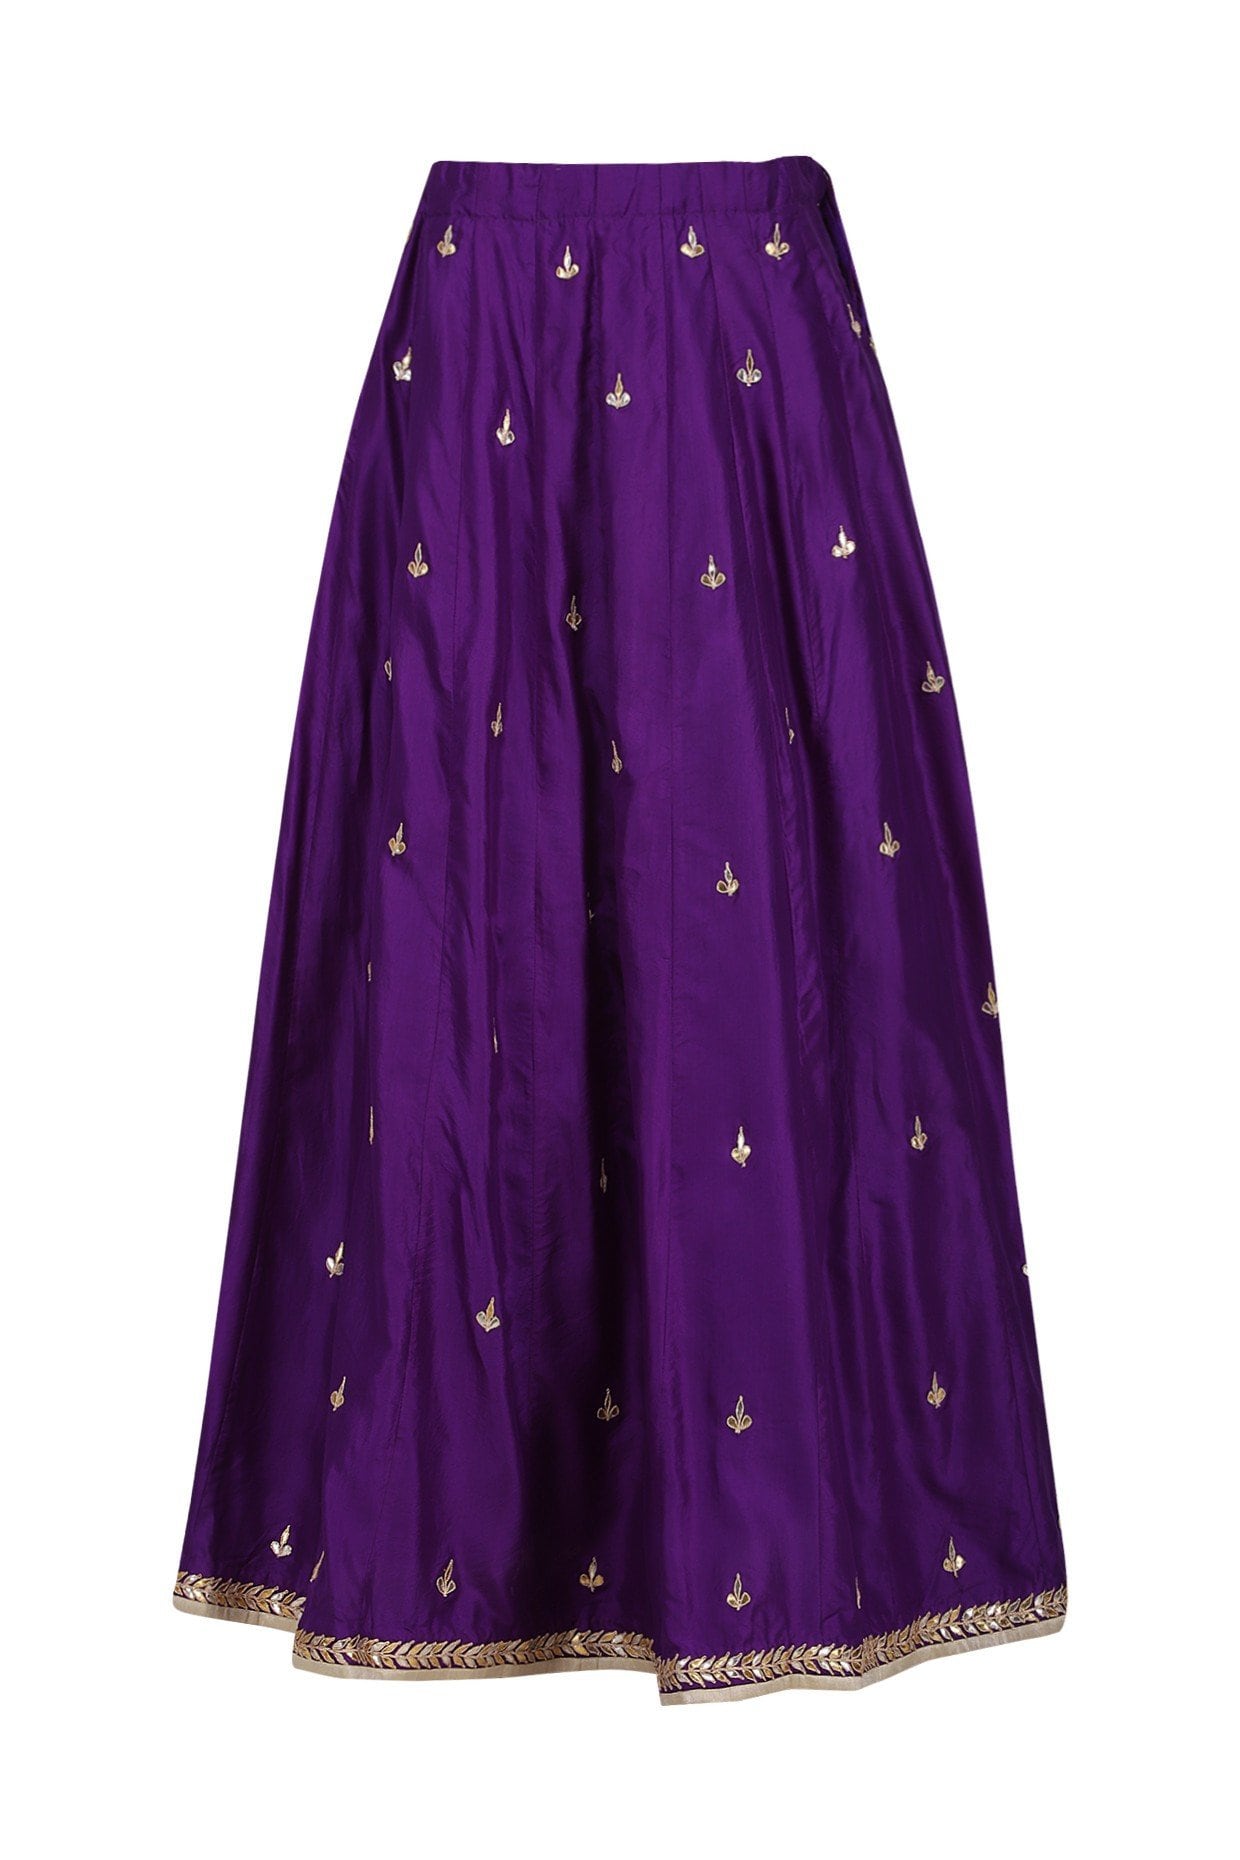 NA-KD rhinestone hem crop top and skirt in purple | ASOS-as247.edu.vn